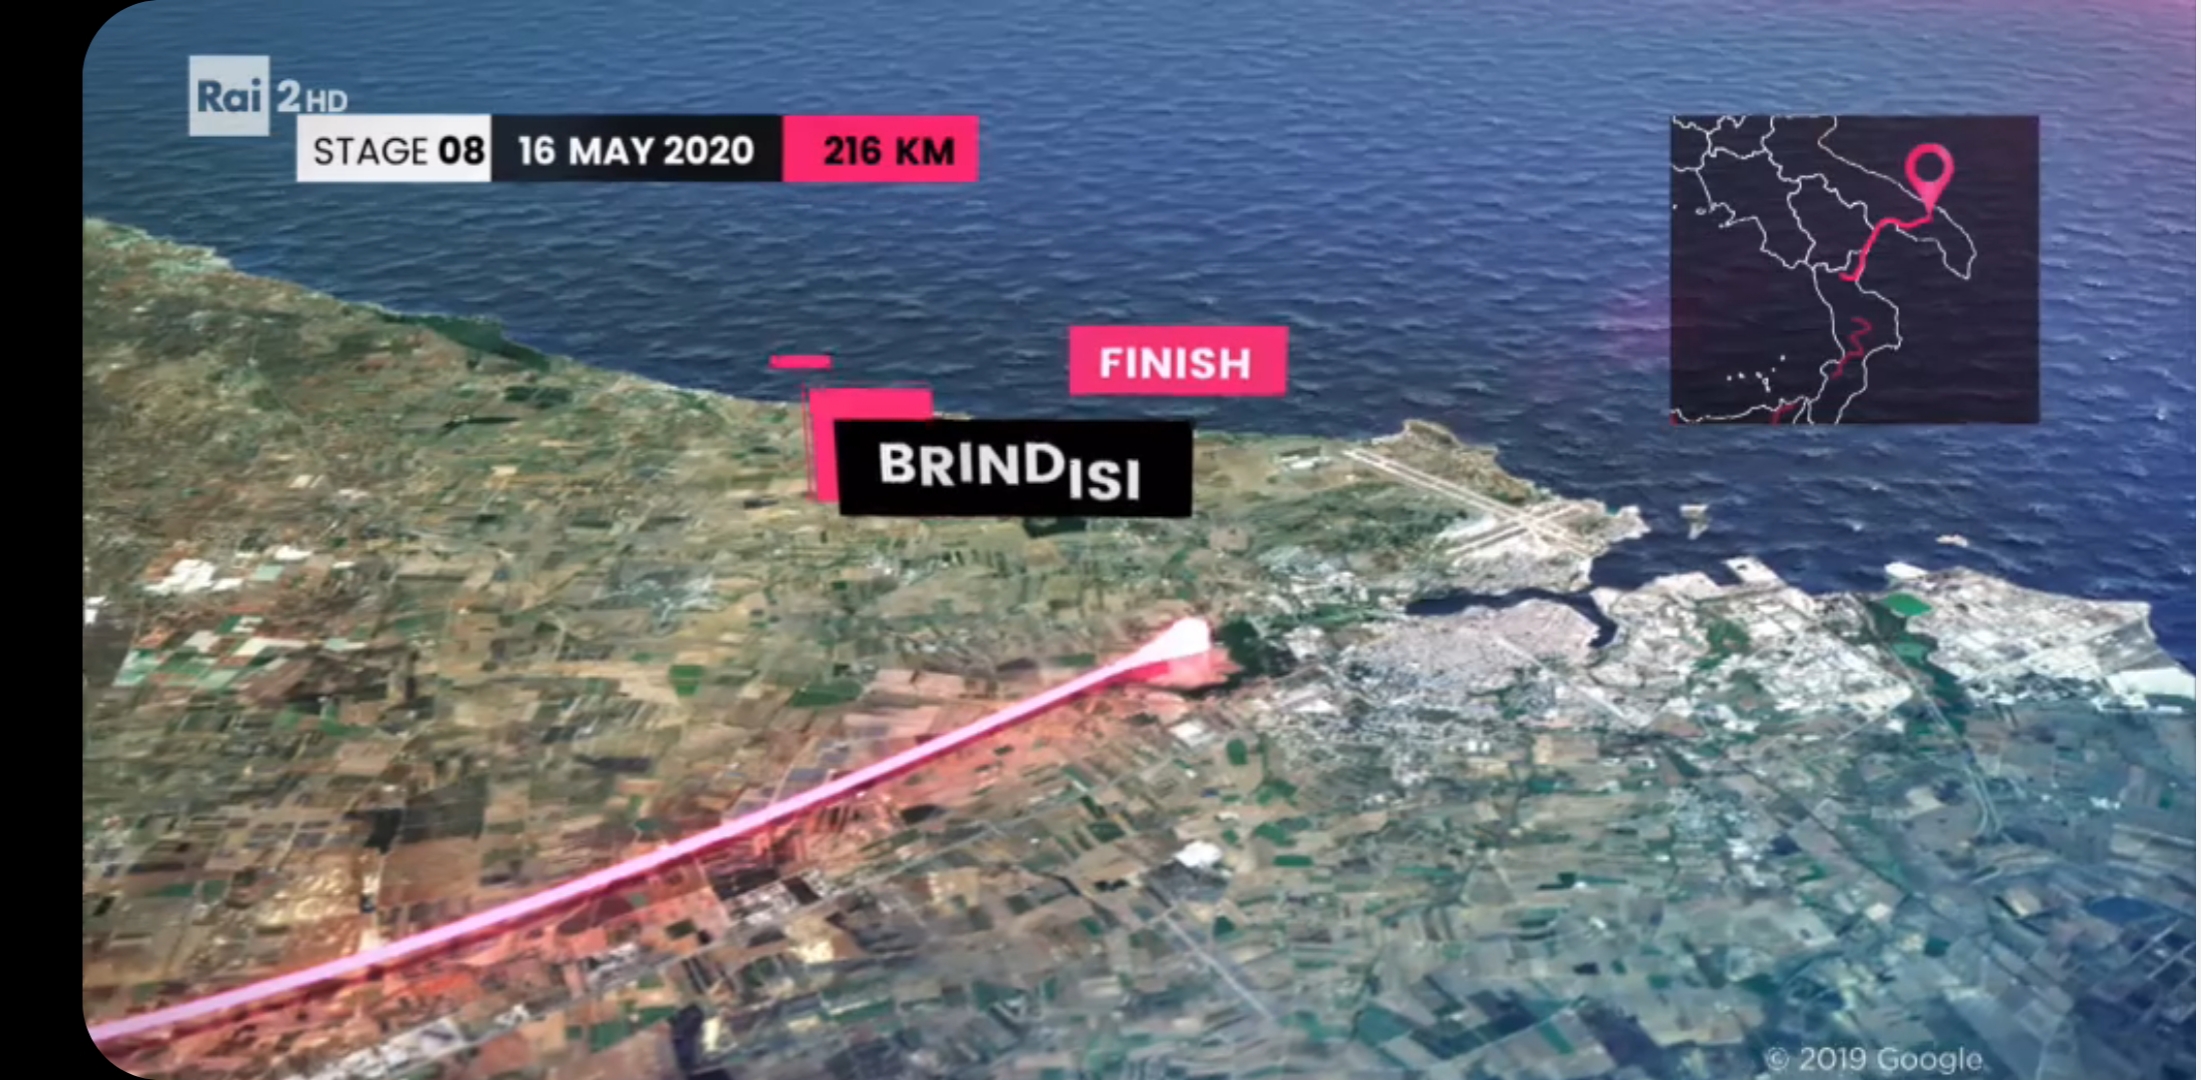 Giro d’Italia, ufficiale l’arrivo a Brindisi: “Un doveroso ringraziamento va alla Regione Puglia che ha consentito di raggiungere questo risultato”